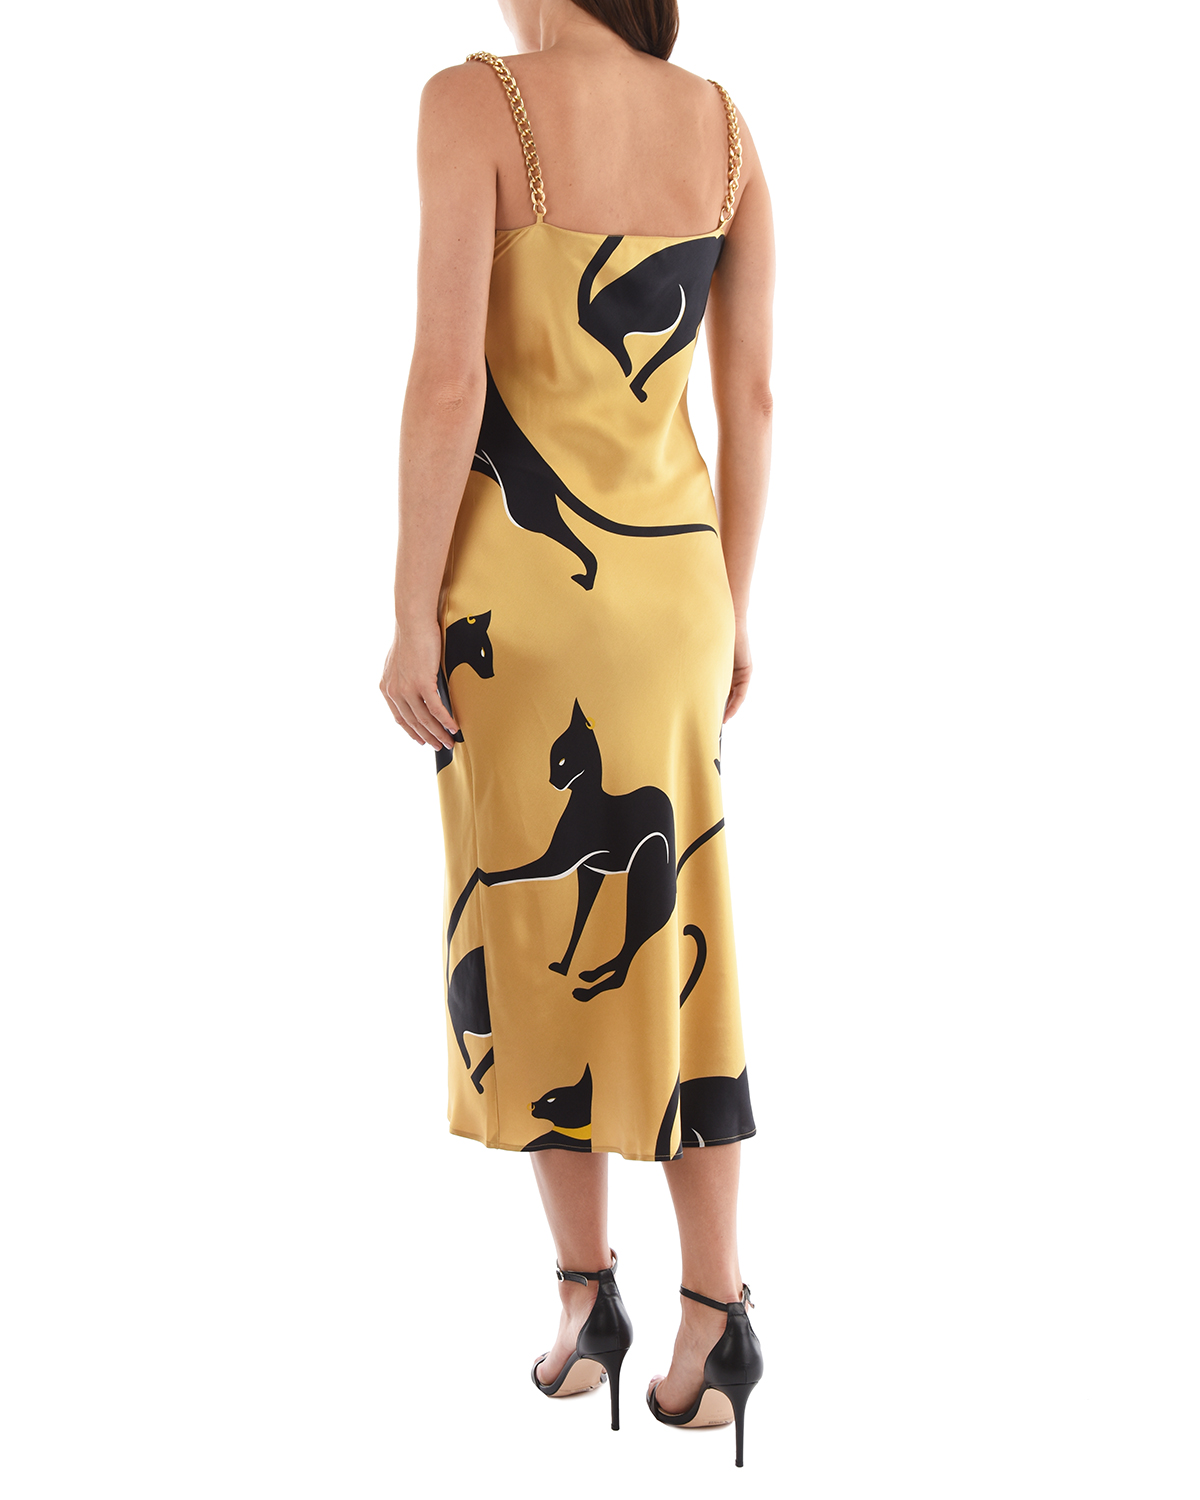 Шелковое платье с принтом "кошки" Olivia von Halle, размер 40, цвет золотой - фото 5